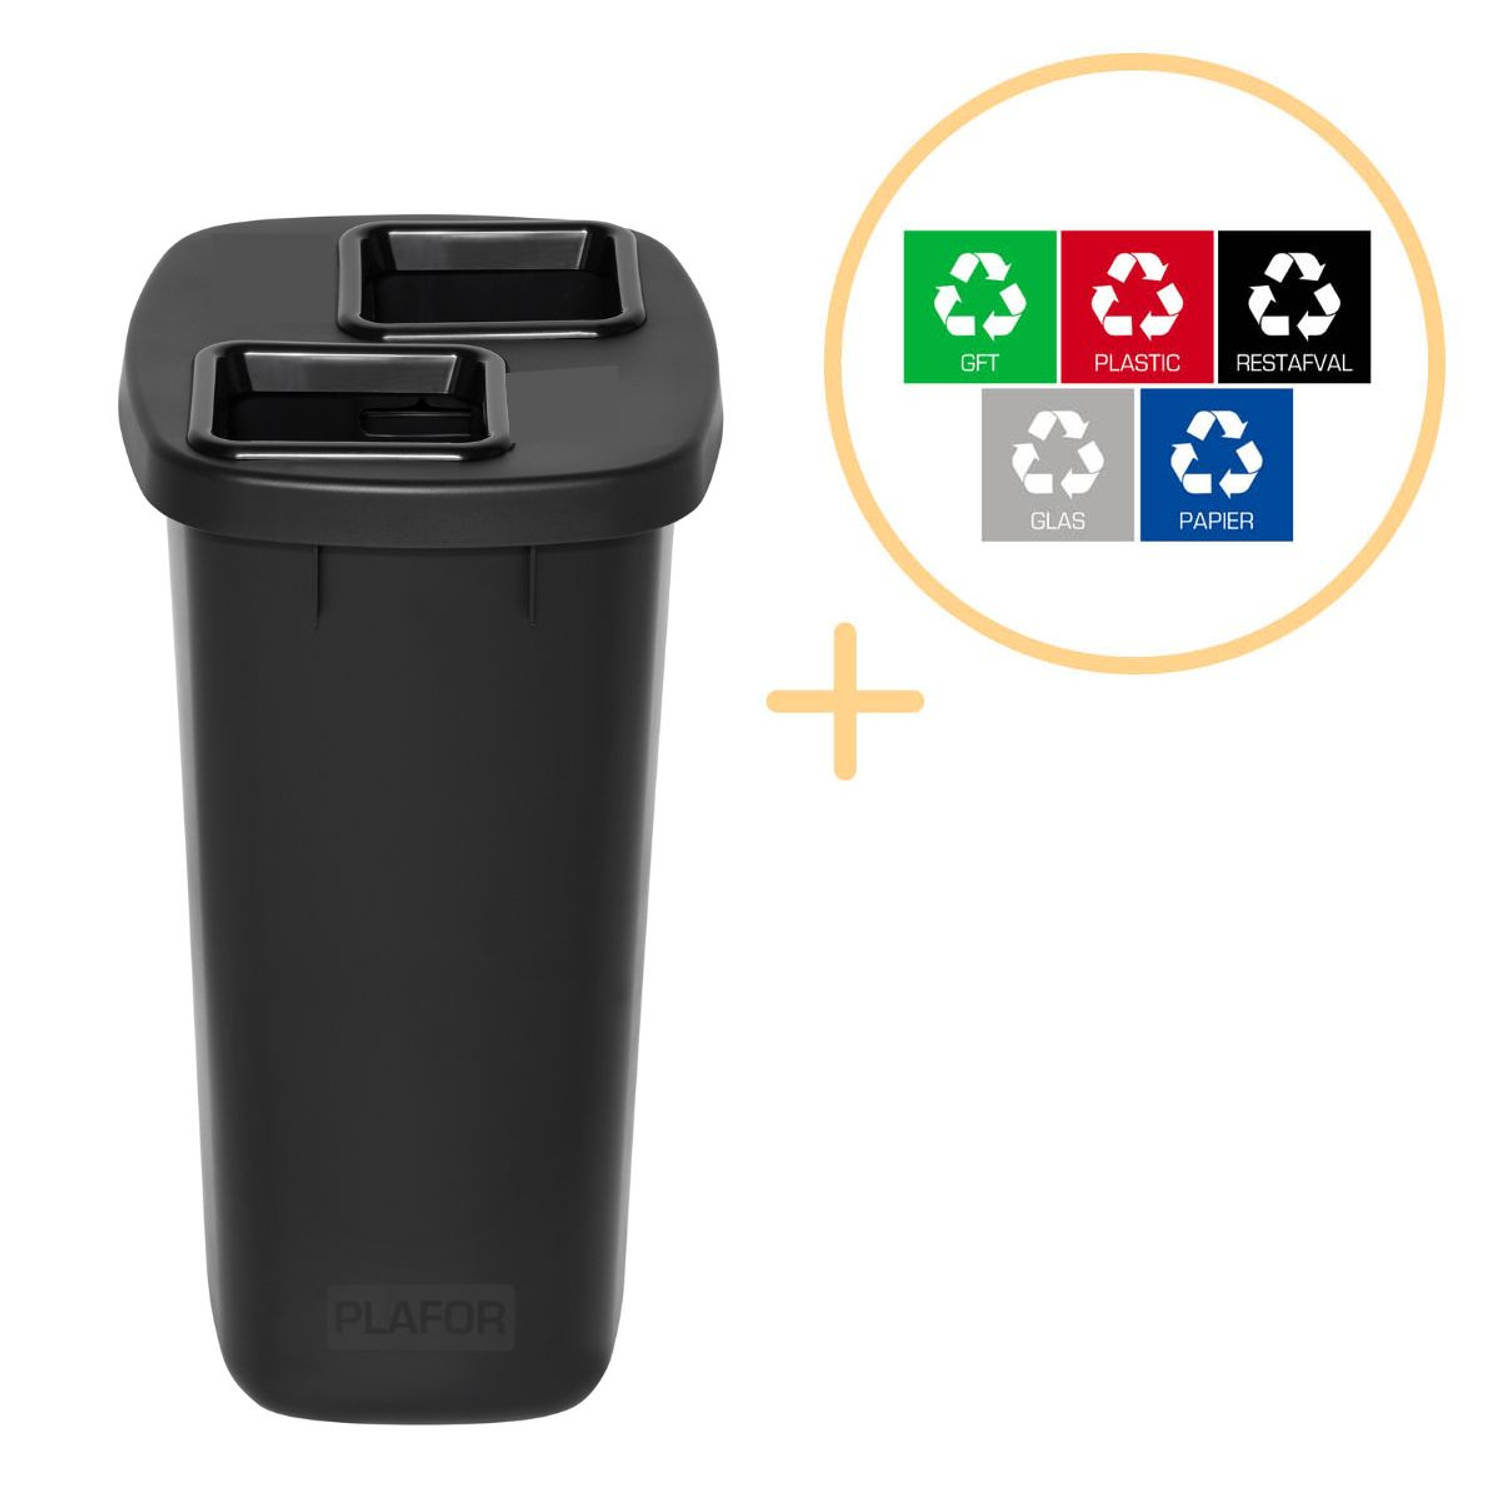 Plafor Duo Bin, Prullenbak voor afvalscheiding - 90L – Zwart - Met 5 Gratis Stickers – Recycle – Afvalbak - Vuilnisbak – Afvalemmer – Afvalscheiding – Vuilnisemmer – Sorteerafvalem